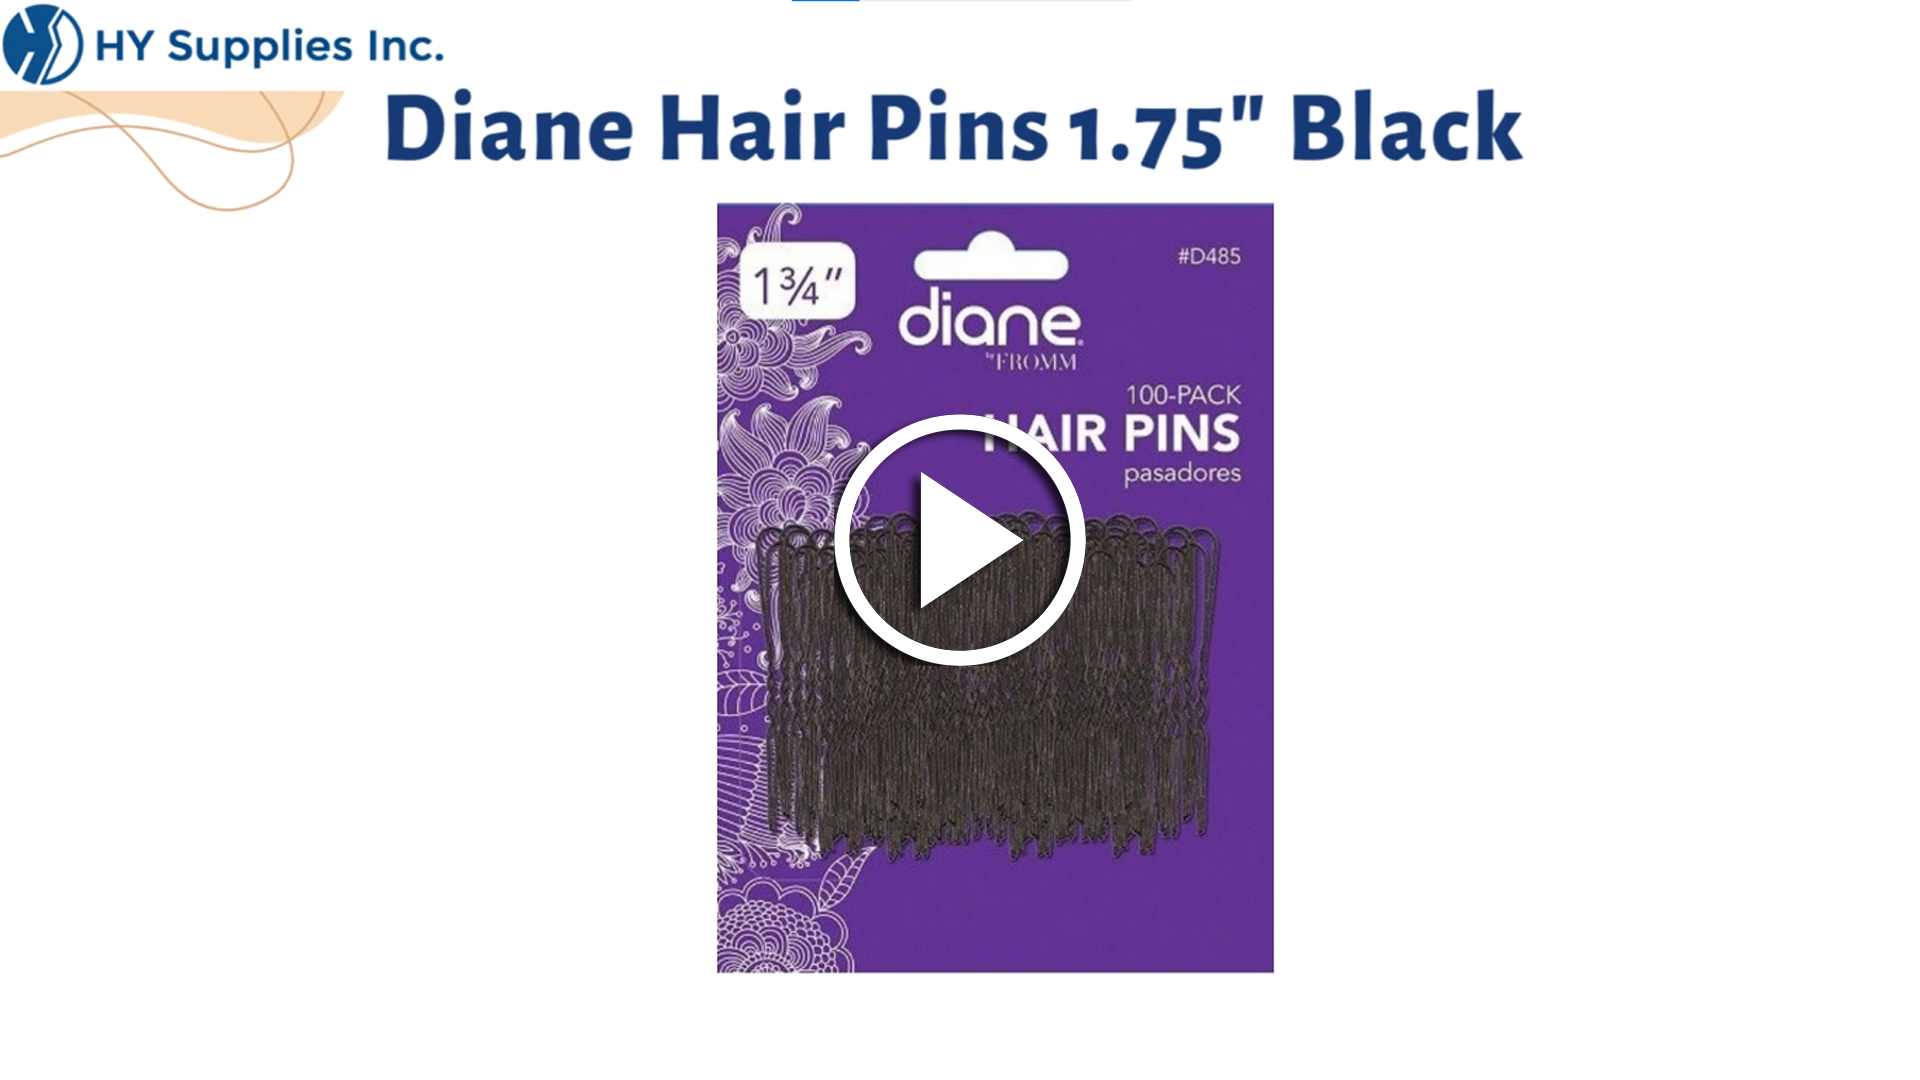  Diane Hair Pins 1.75" Black